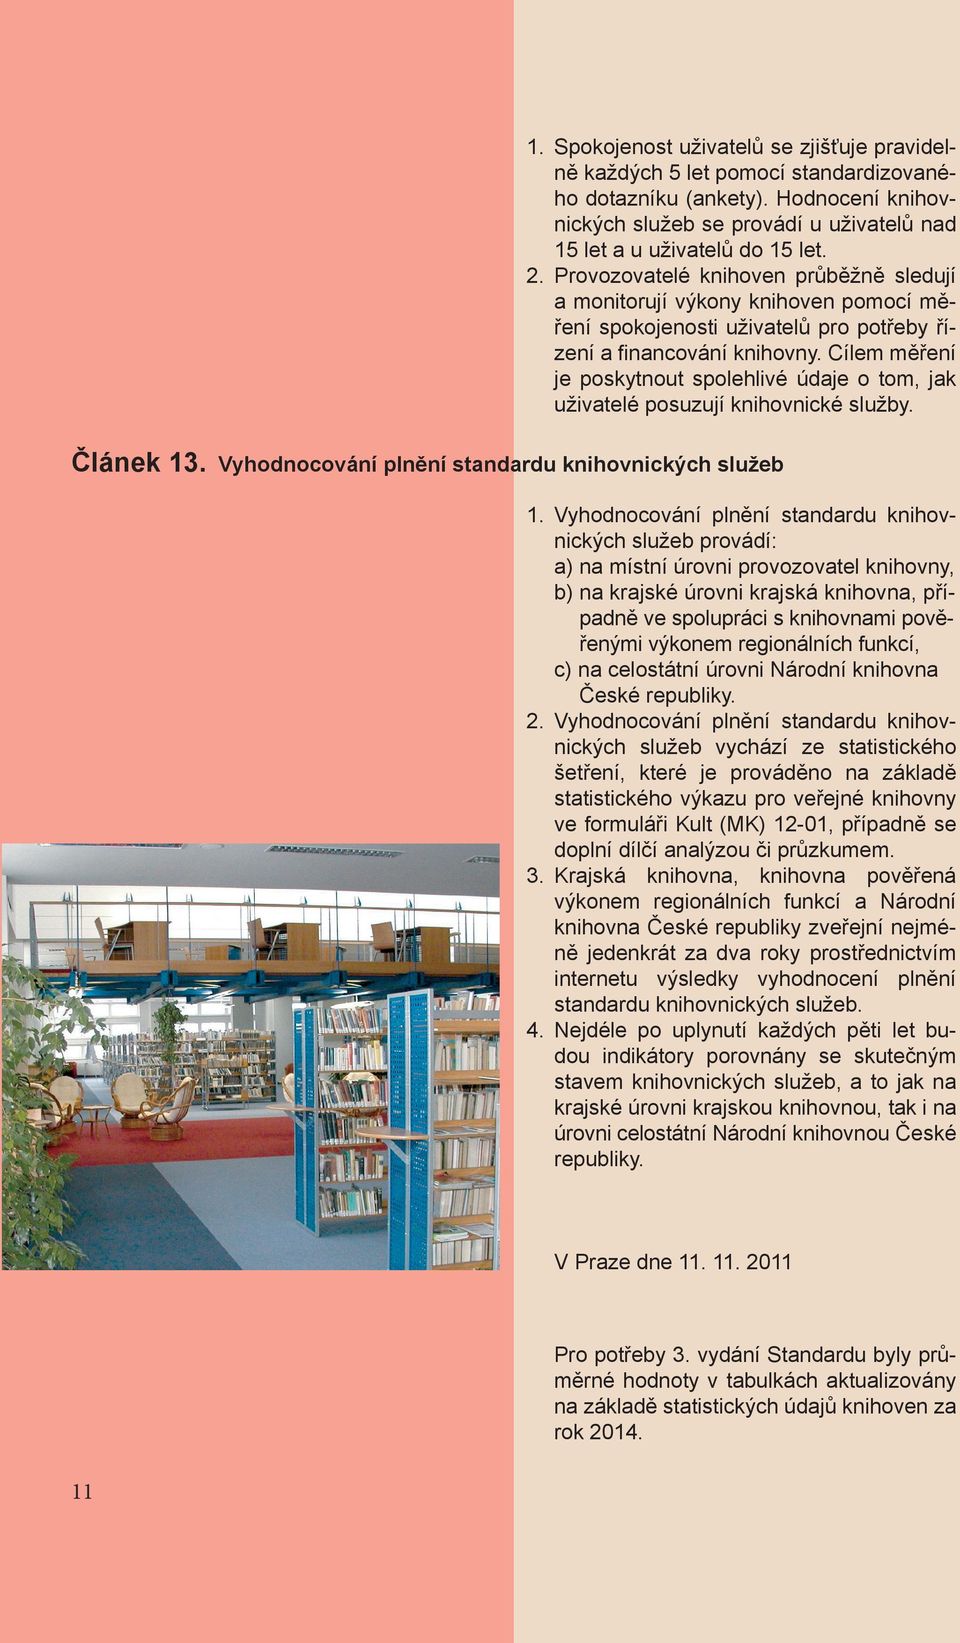 Cílem měření je poskytnout spolehlivé údaje o tom, jak uživatelé posuzují knihovnické služby. Článek 13. Vyhodnocování plnění standardu knihovnických služeb 1.